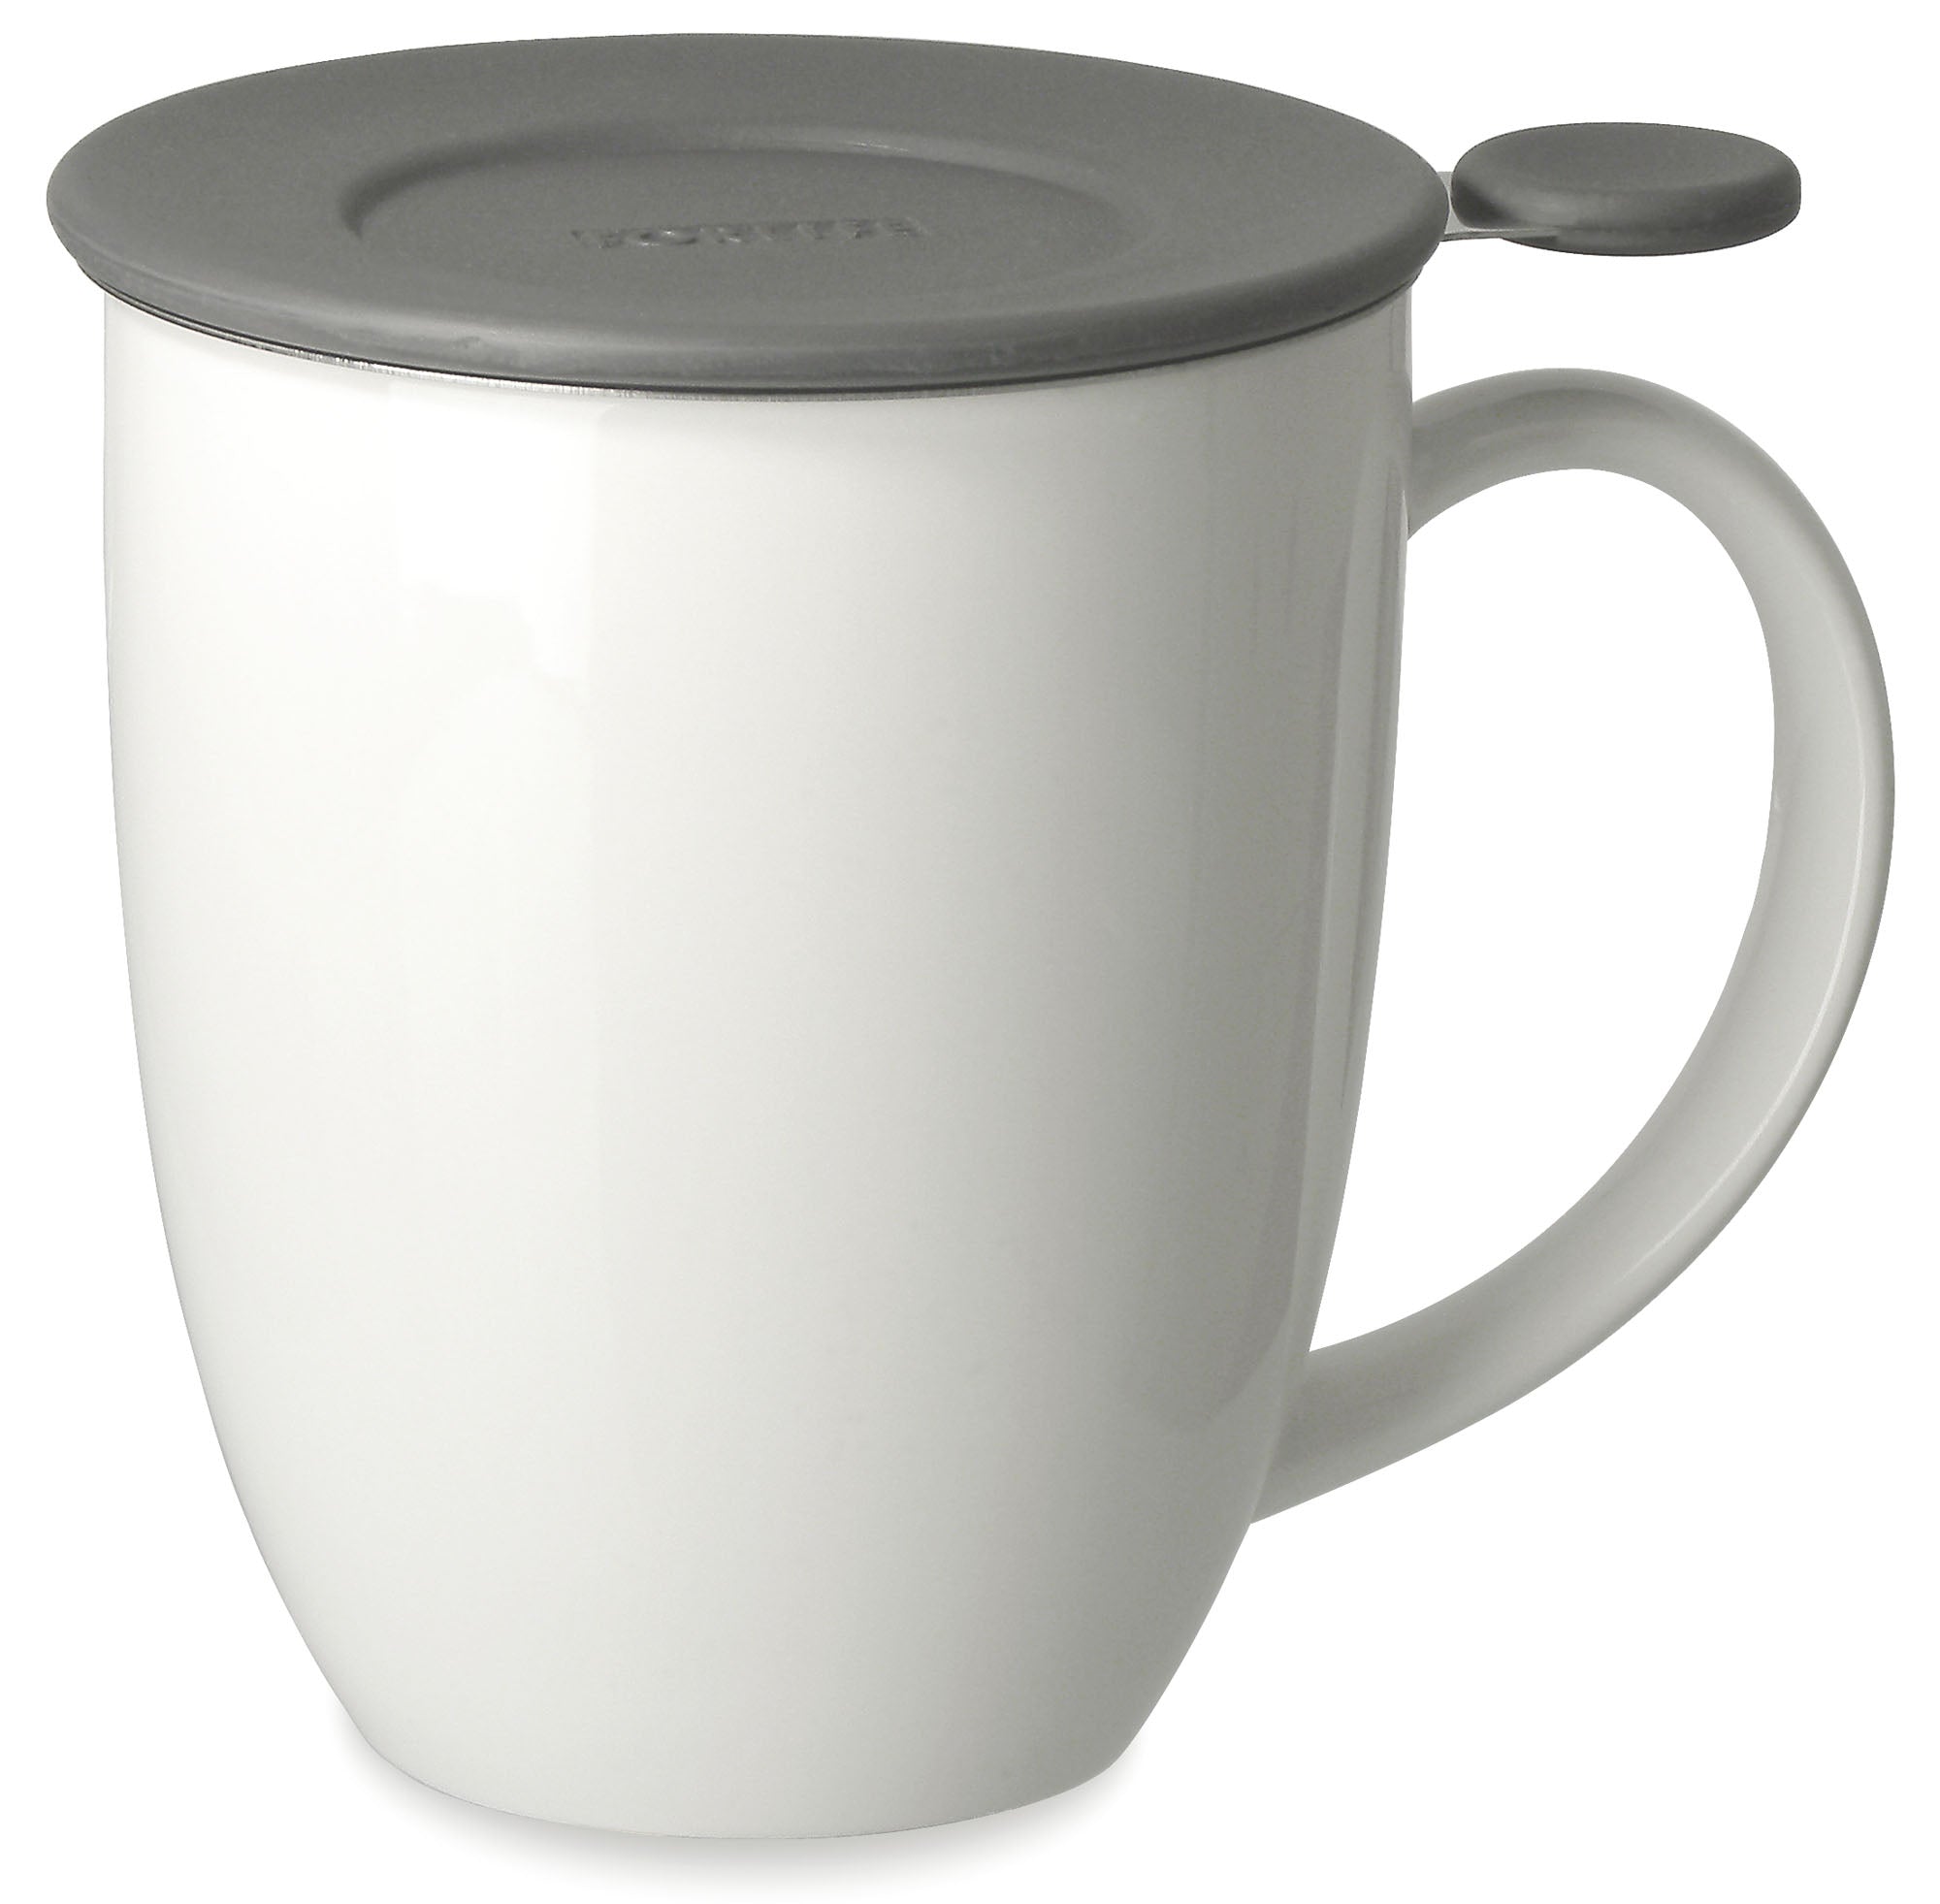 Café infusion' Mug